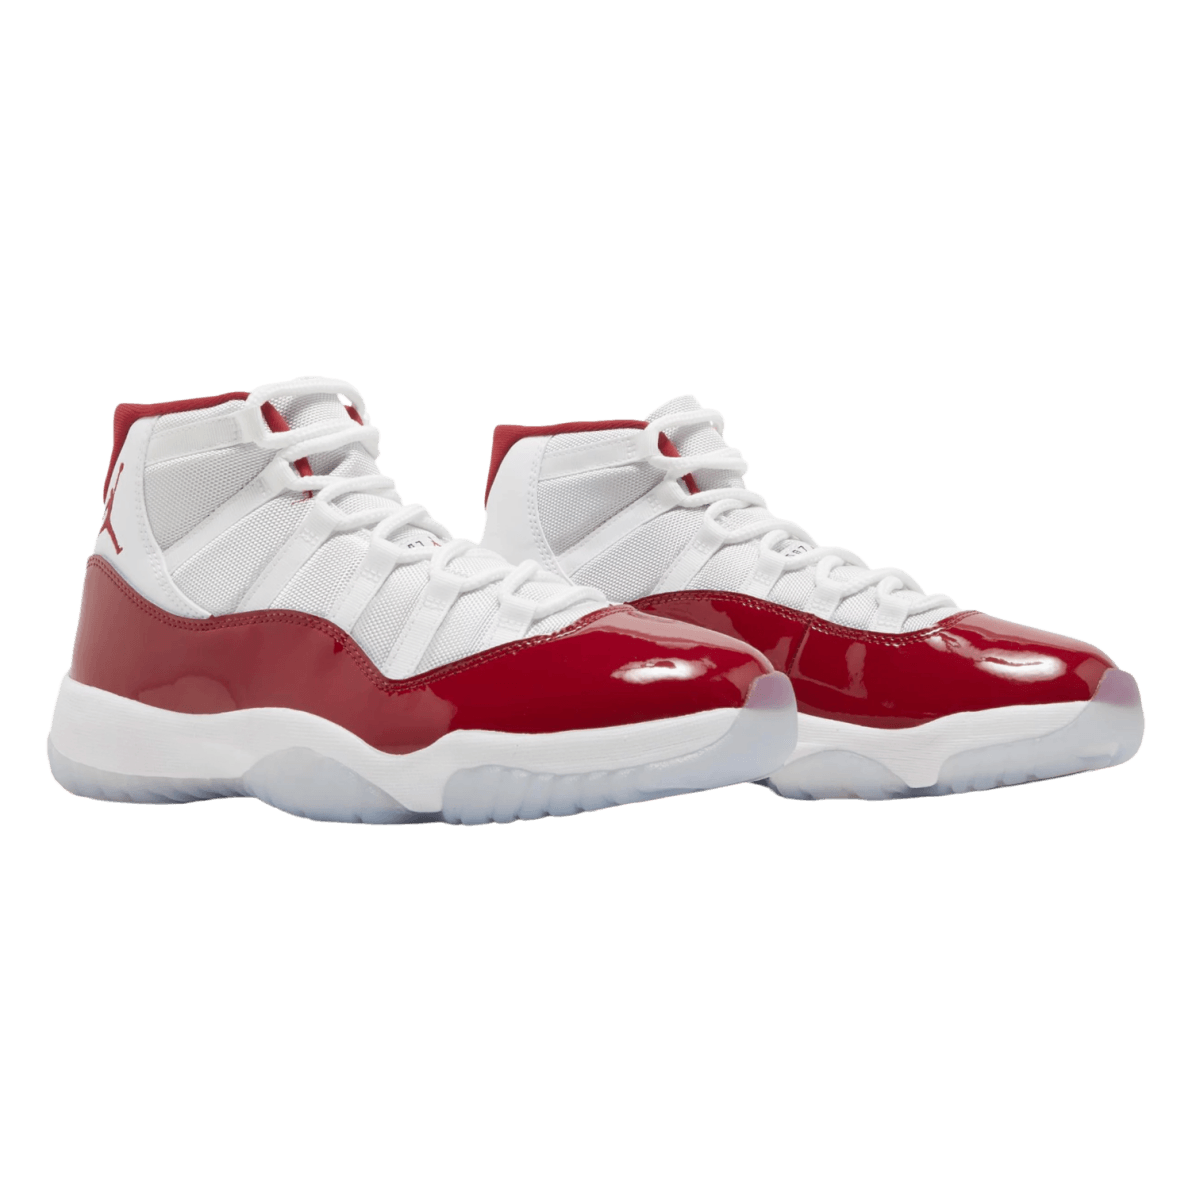 Air Jordan 11 Retro 'Cherry' - Pre School - High Sneaker - Jawns on Fire Sneakers & Streetwear